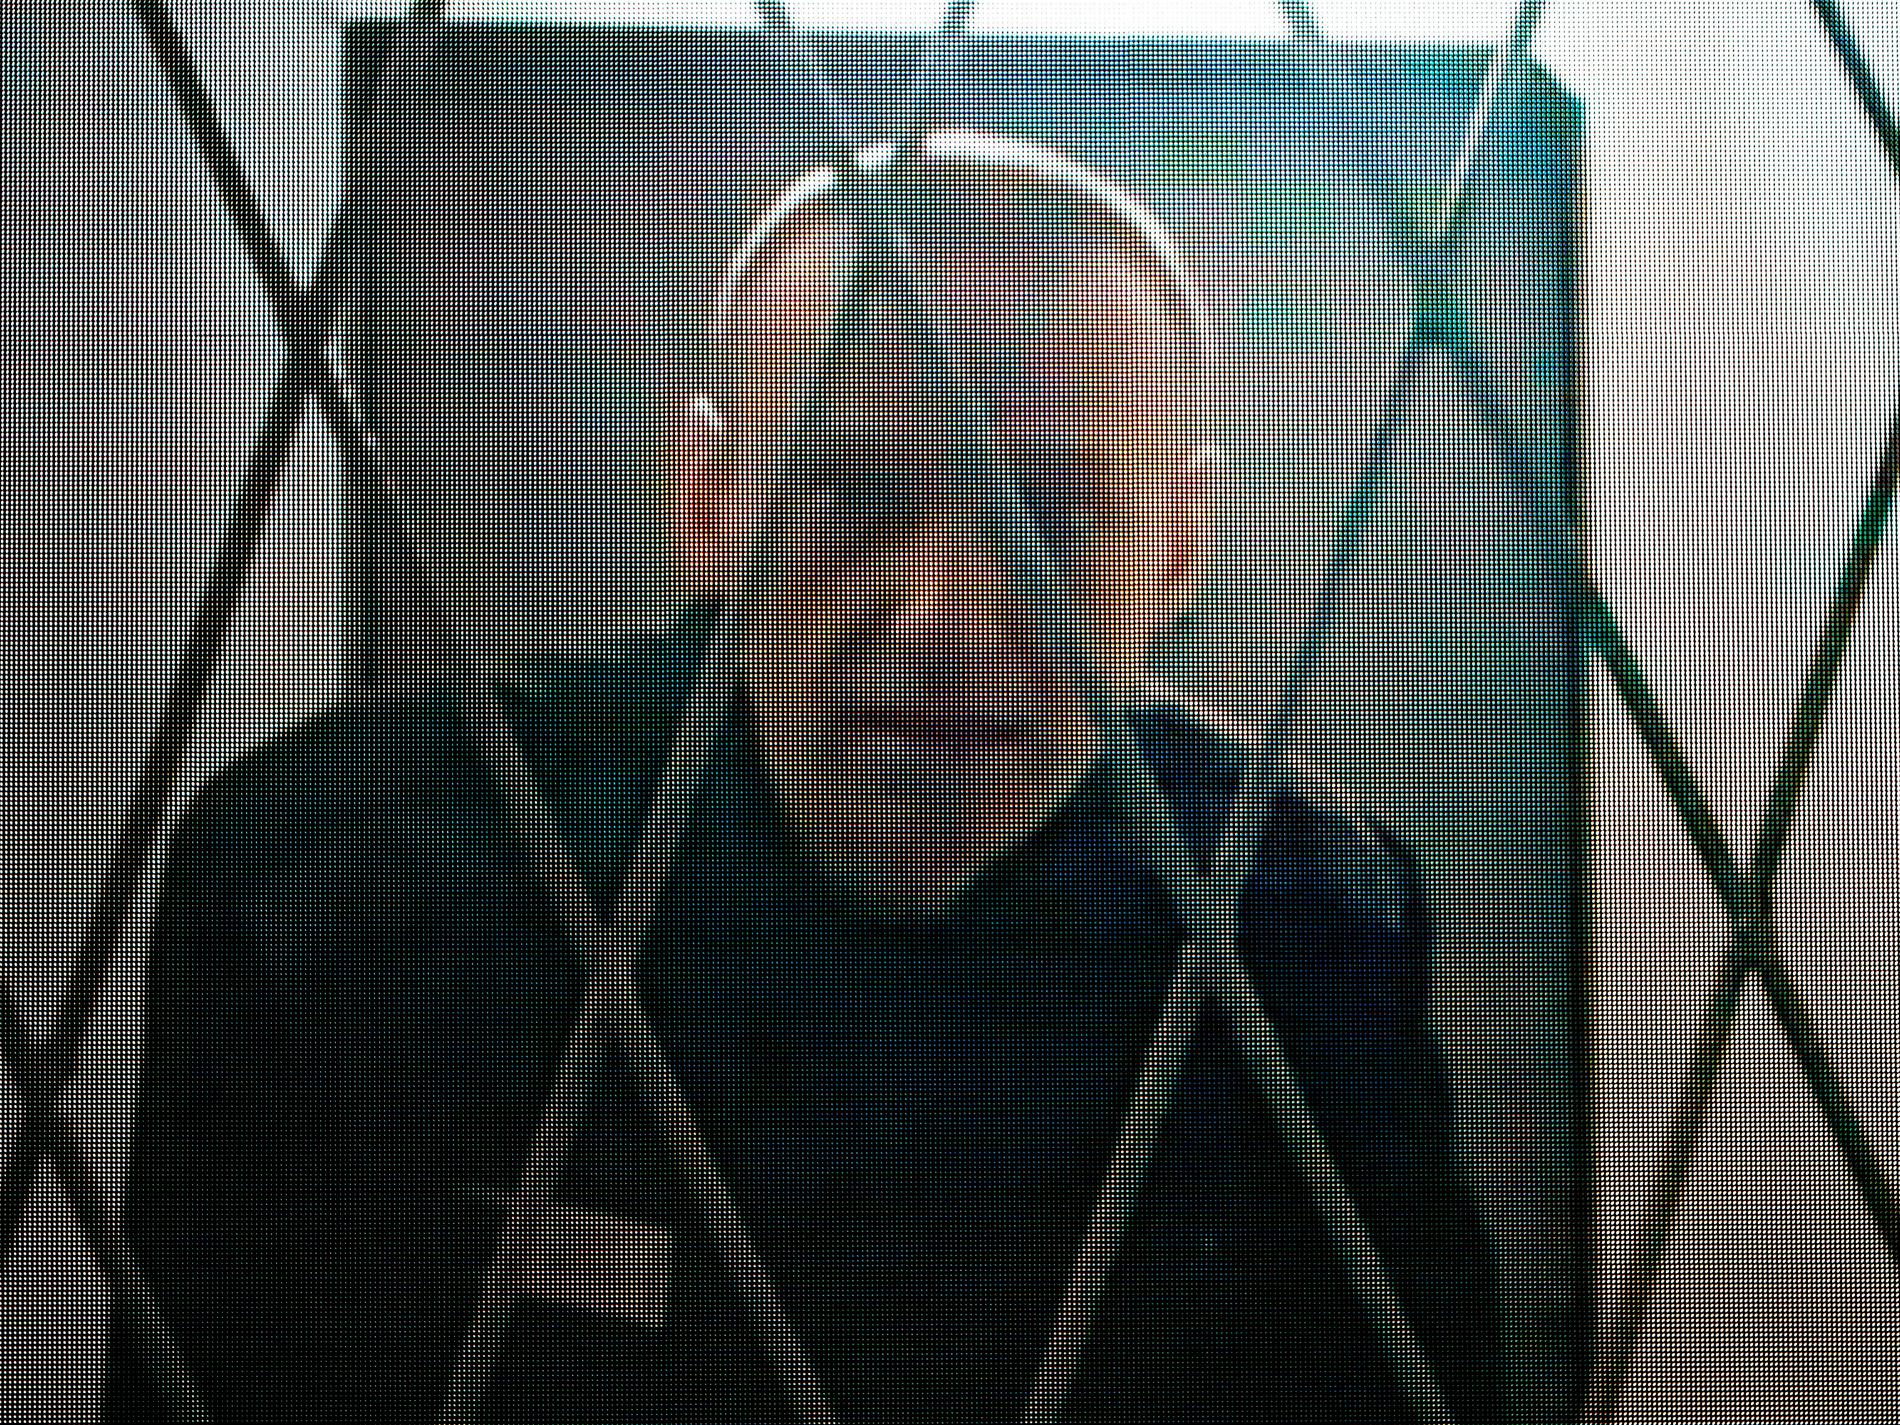 Fängslade Navalnyj väcks med ryssvänlig pop